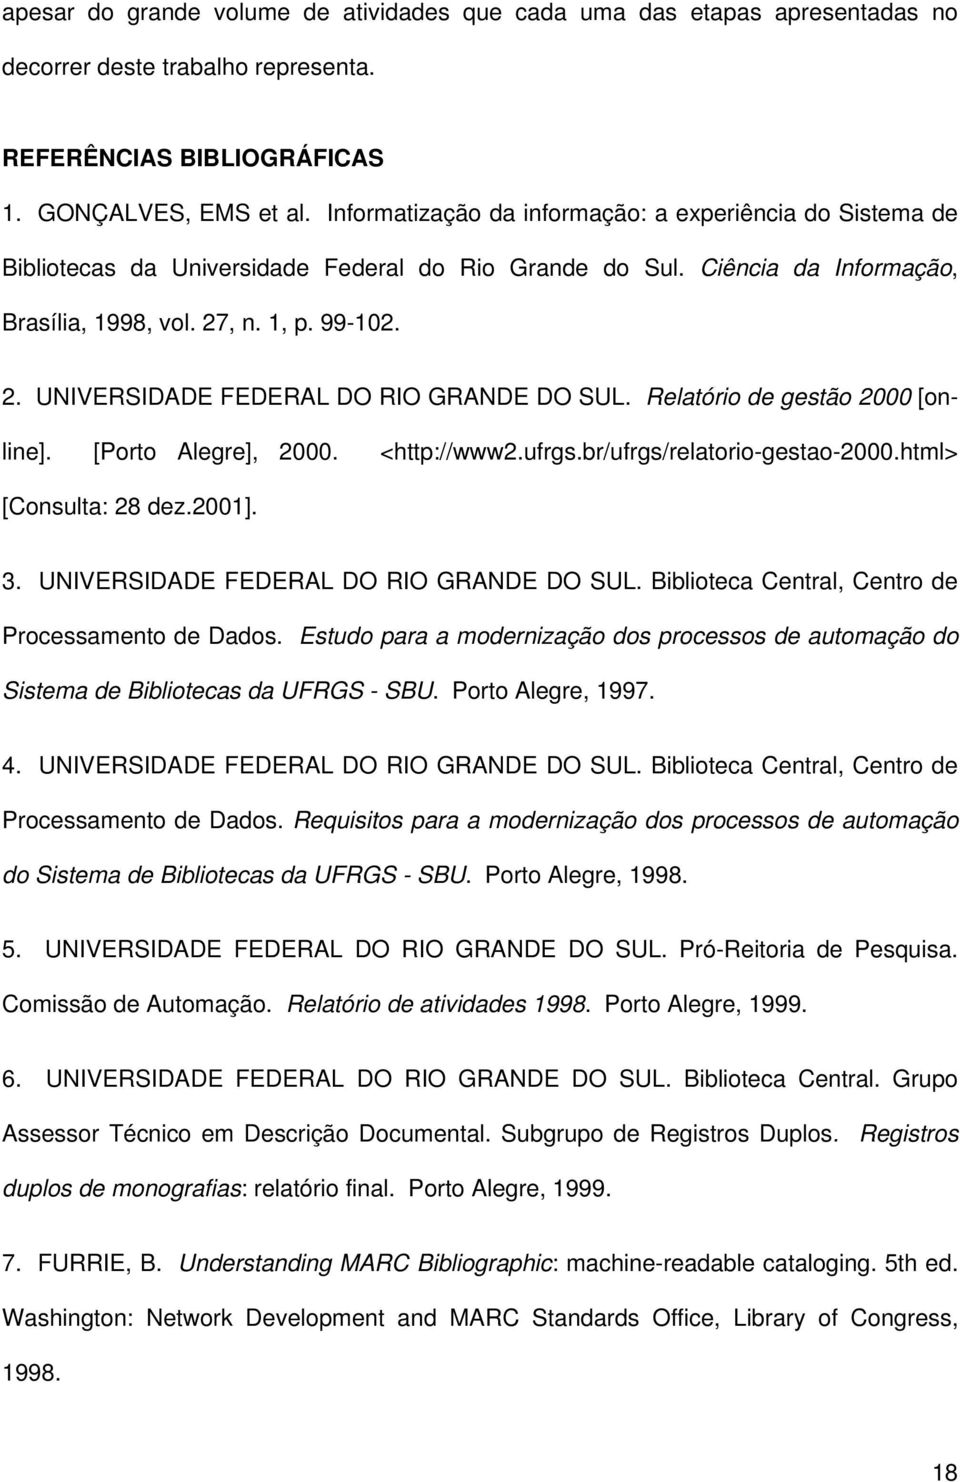 , n. 1, p. 99-102. 2. UNIVERSIDADE FEDERAL DO RIO GRANDE DO SUL. Relatório de gestão 2000 [online]. [Porto Alegre], 2000. <http://www2.ufrgs.br/ufrgs/relatorio-gestao-2000.html> [Consulta: 28 dez.